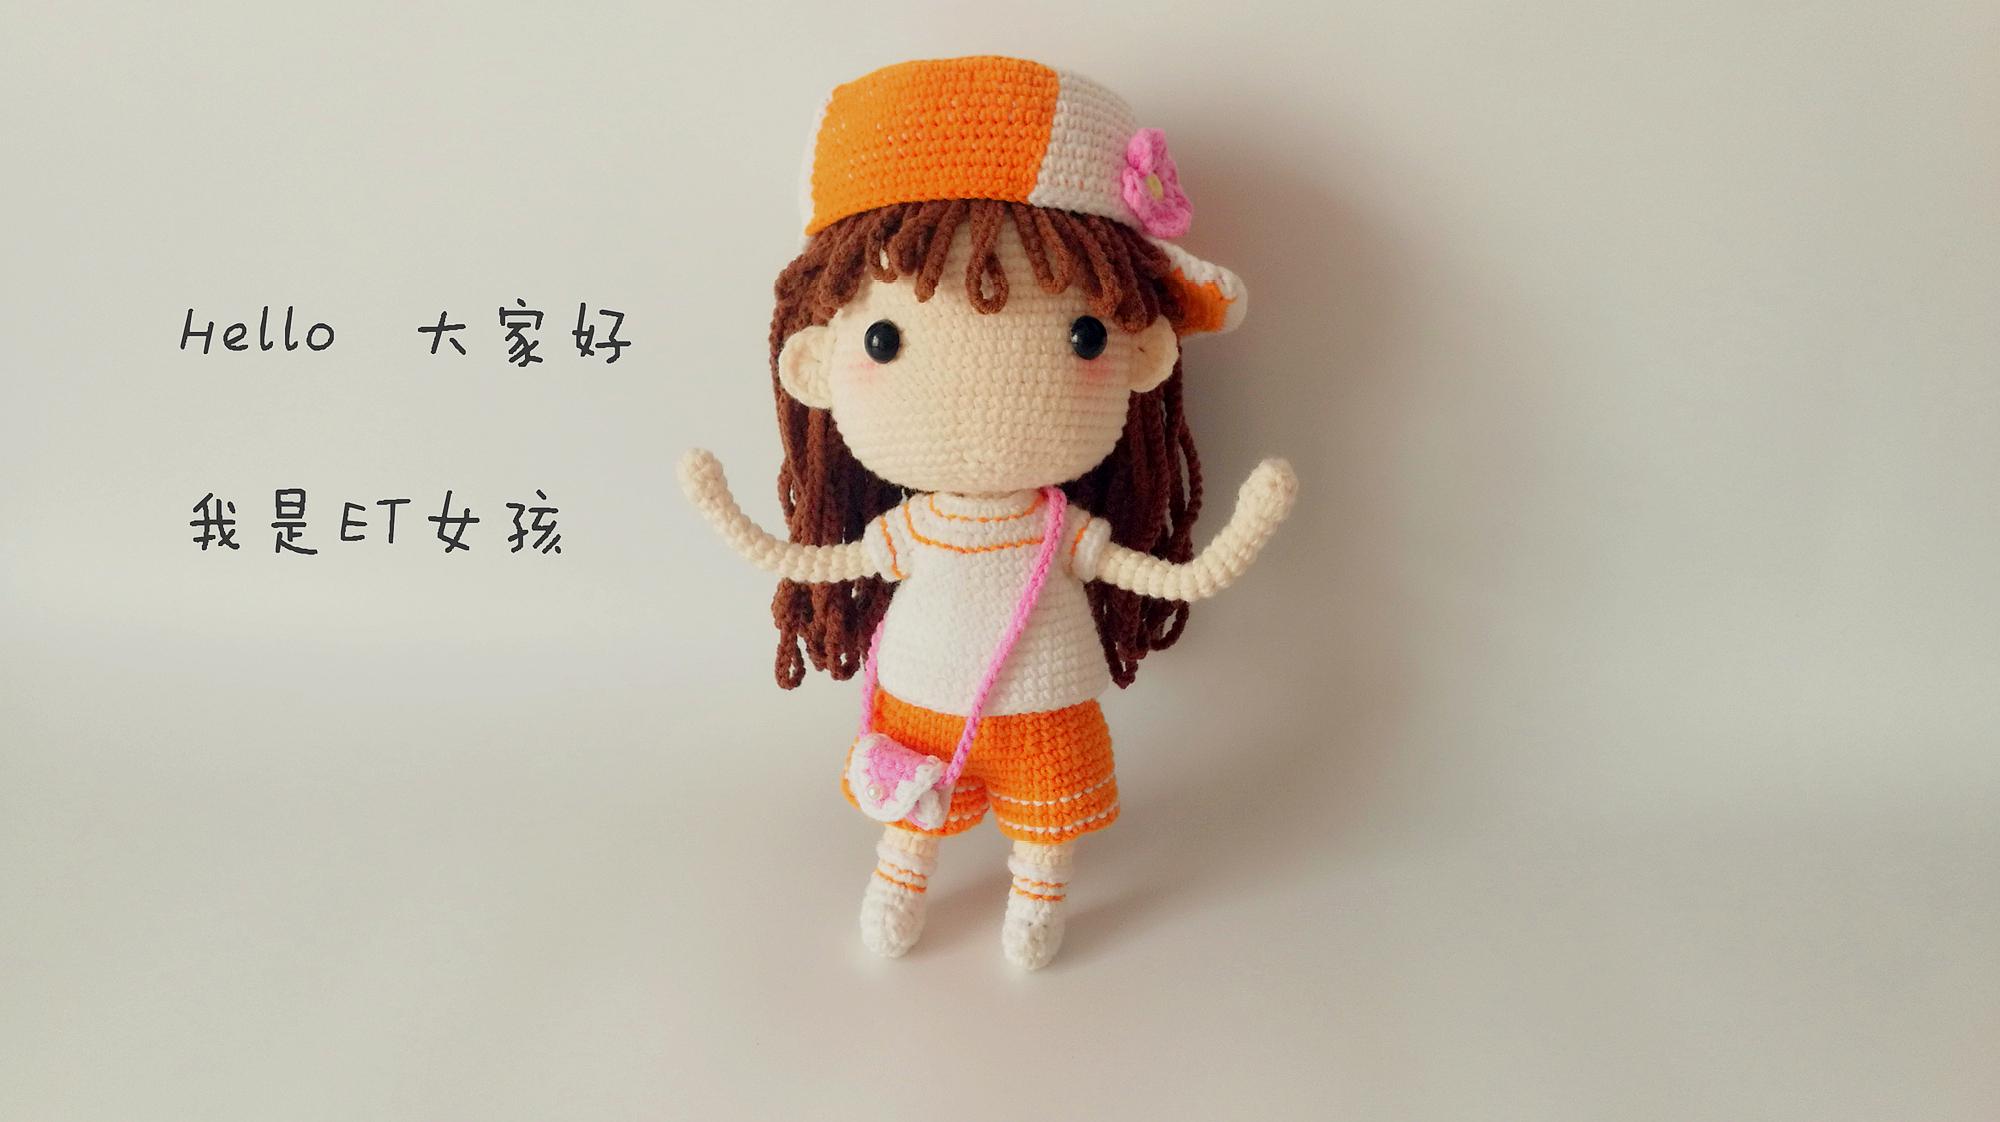 第一集:钩针编织 et女孩玩偶娃娃 头部手臂耳朵的编织方法